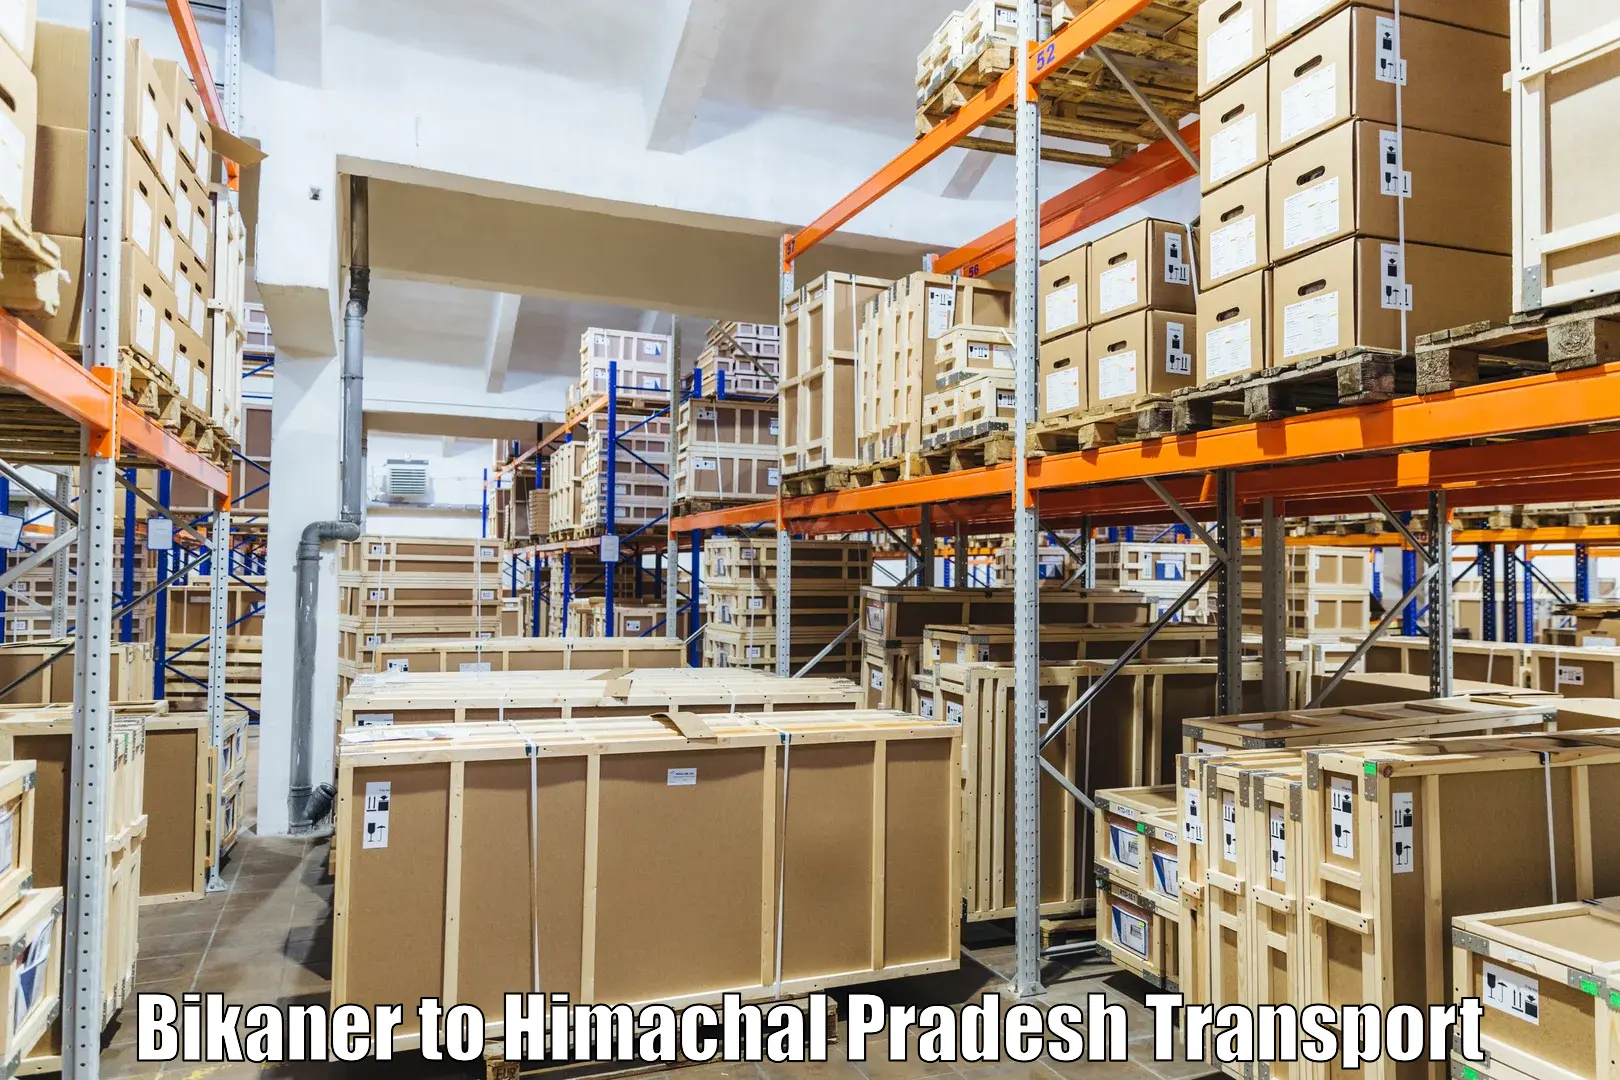 Cargo transportation services in Bikaner to Dulchehra